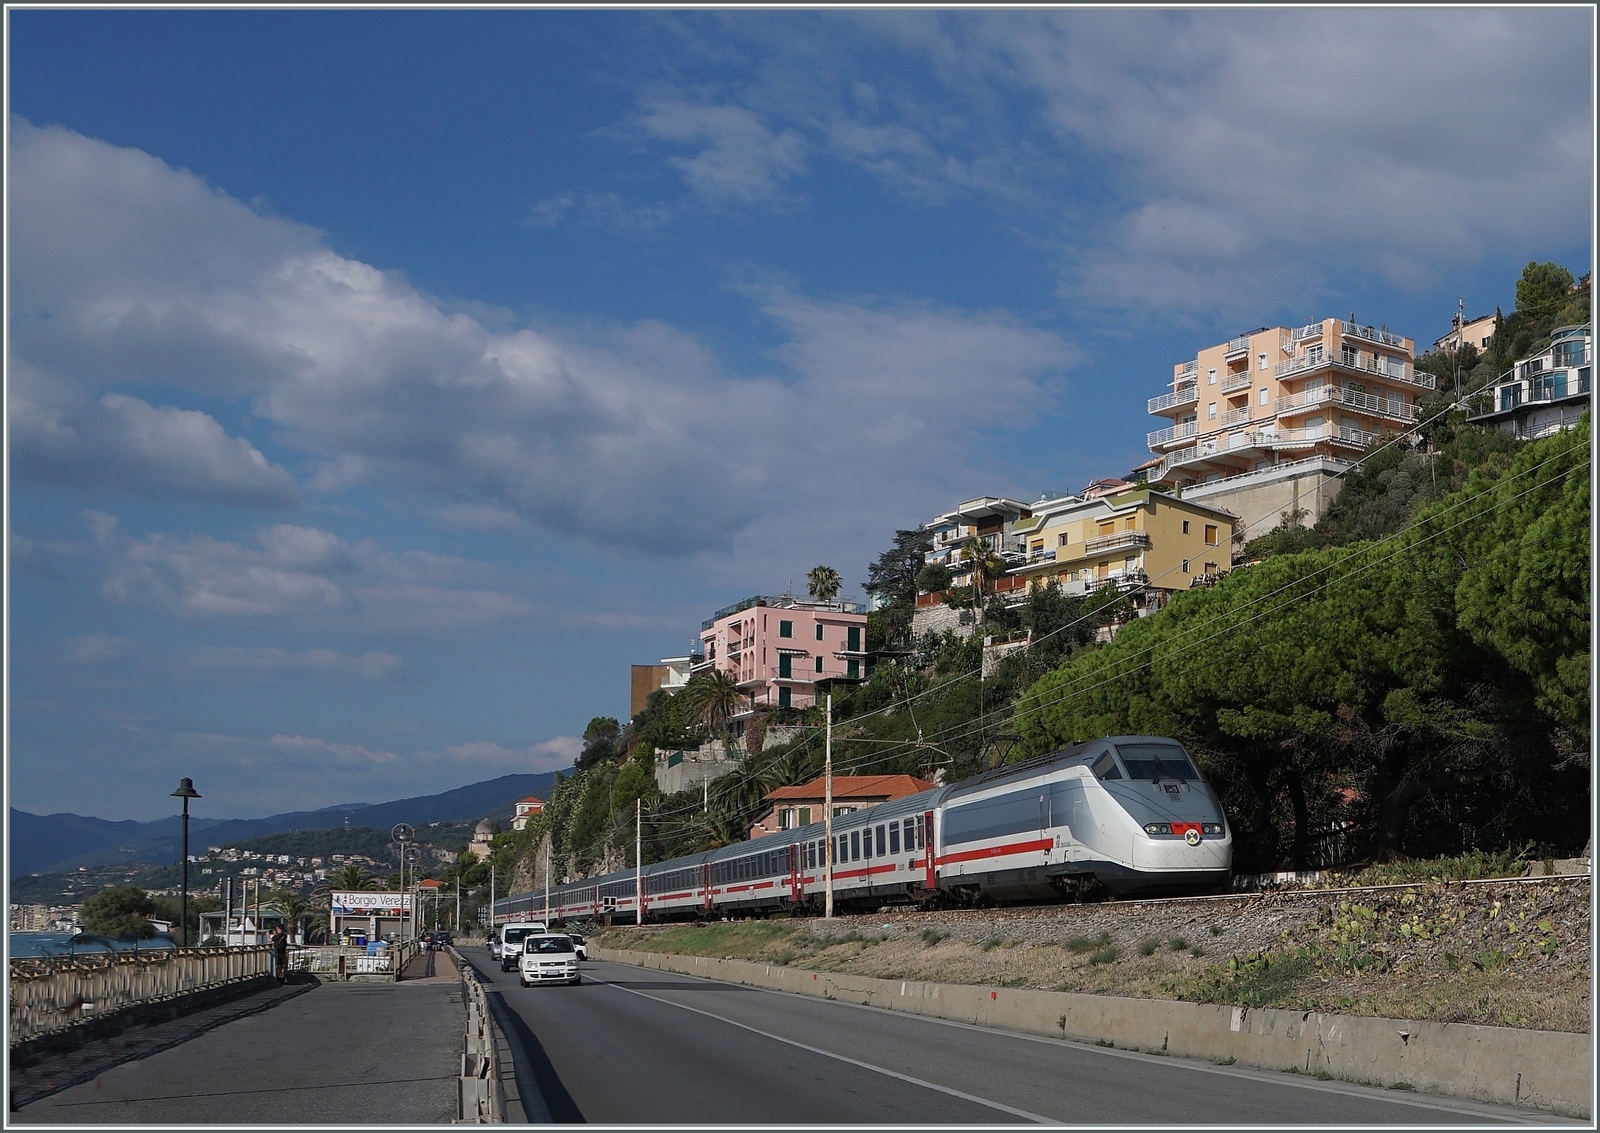 Mit zwei E 414 Triebköpfen bestückt fährt der IC 631 Ventimiglia nach Milano kurz vor Finale Liguere bei Borgio-Verezzi auf der hier noch einspurigen Strecke dem Meer entlang. 1872 wurde die Strecke eröffnet, doch der knappe Platz führte schon 1977 zu ersten Streckenverlegungen in Tunnels. Zur Zeit sind nur noch wenige Streckenabschnitte auf dem ursprünglichen Trassenverlauf in Betrieb. 

22. Sept. 2022